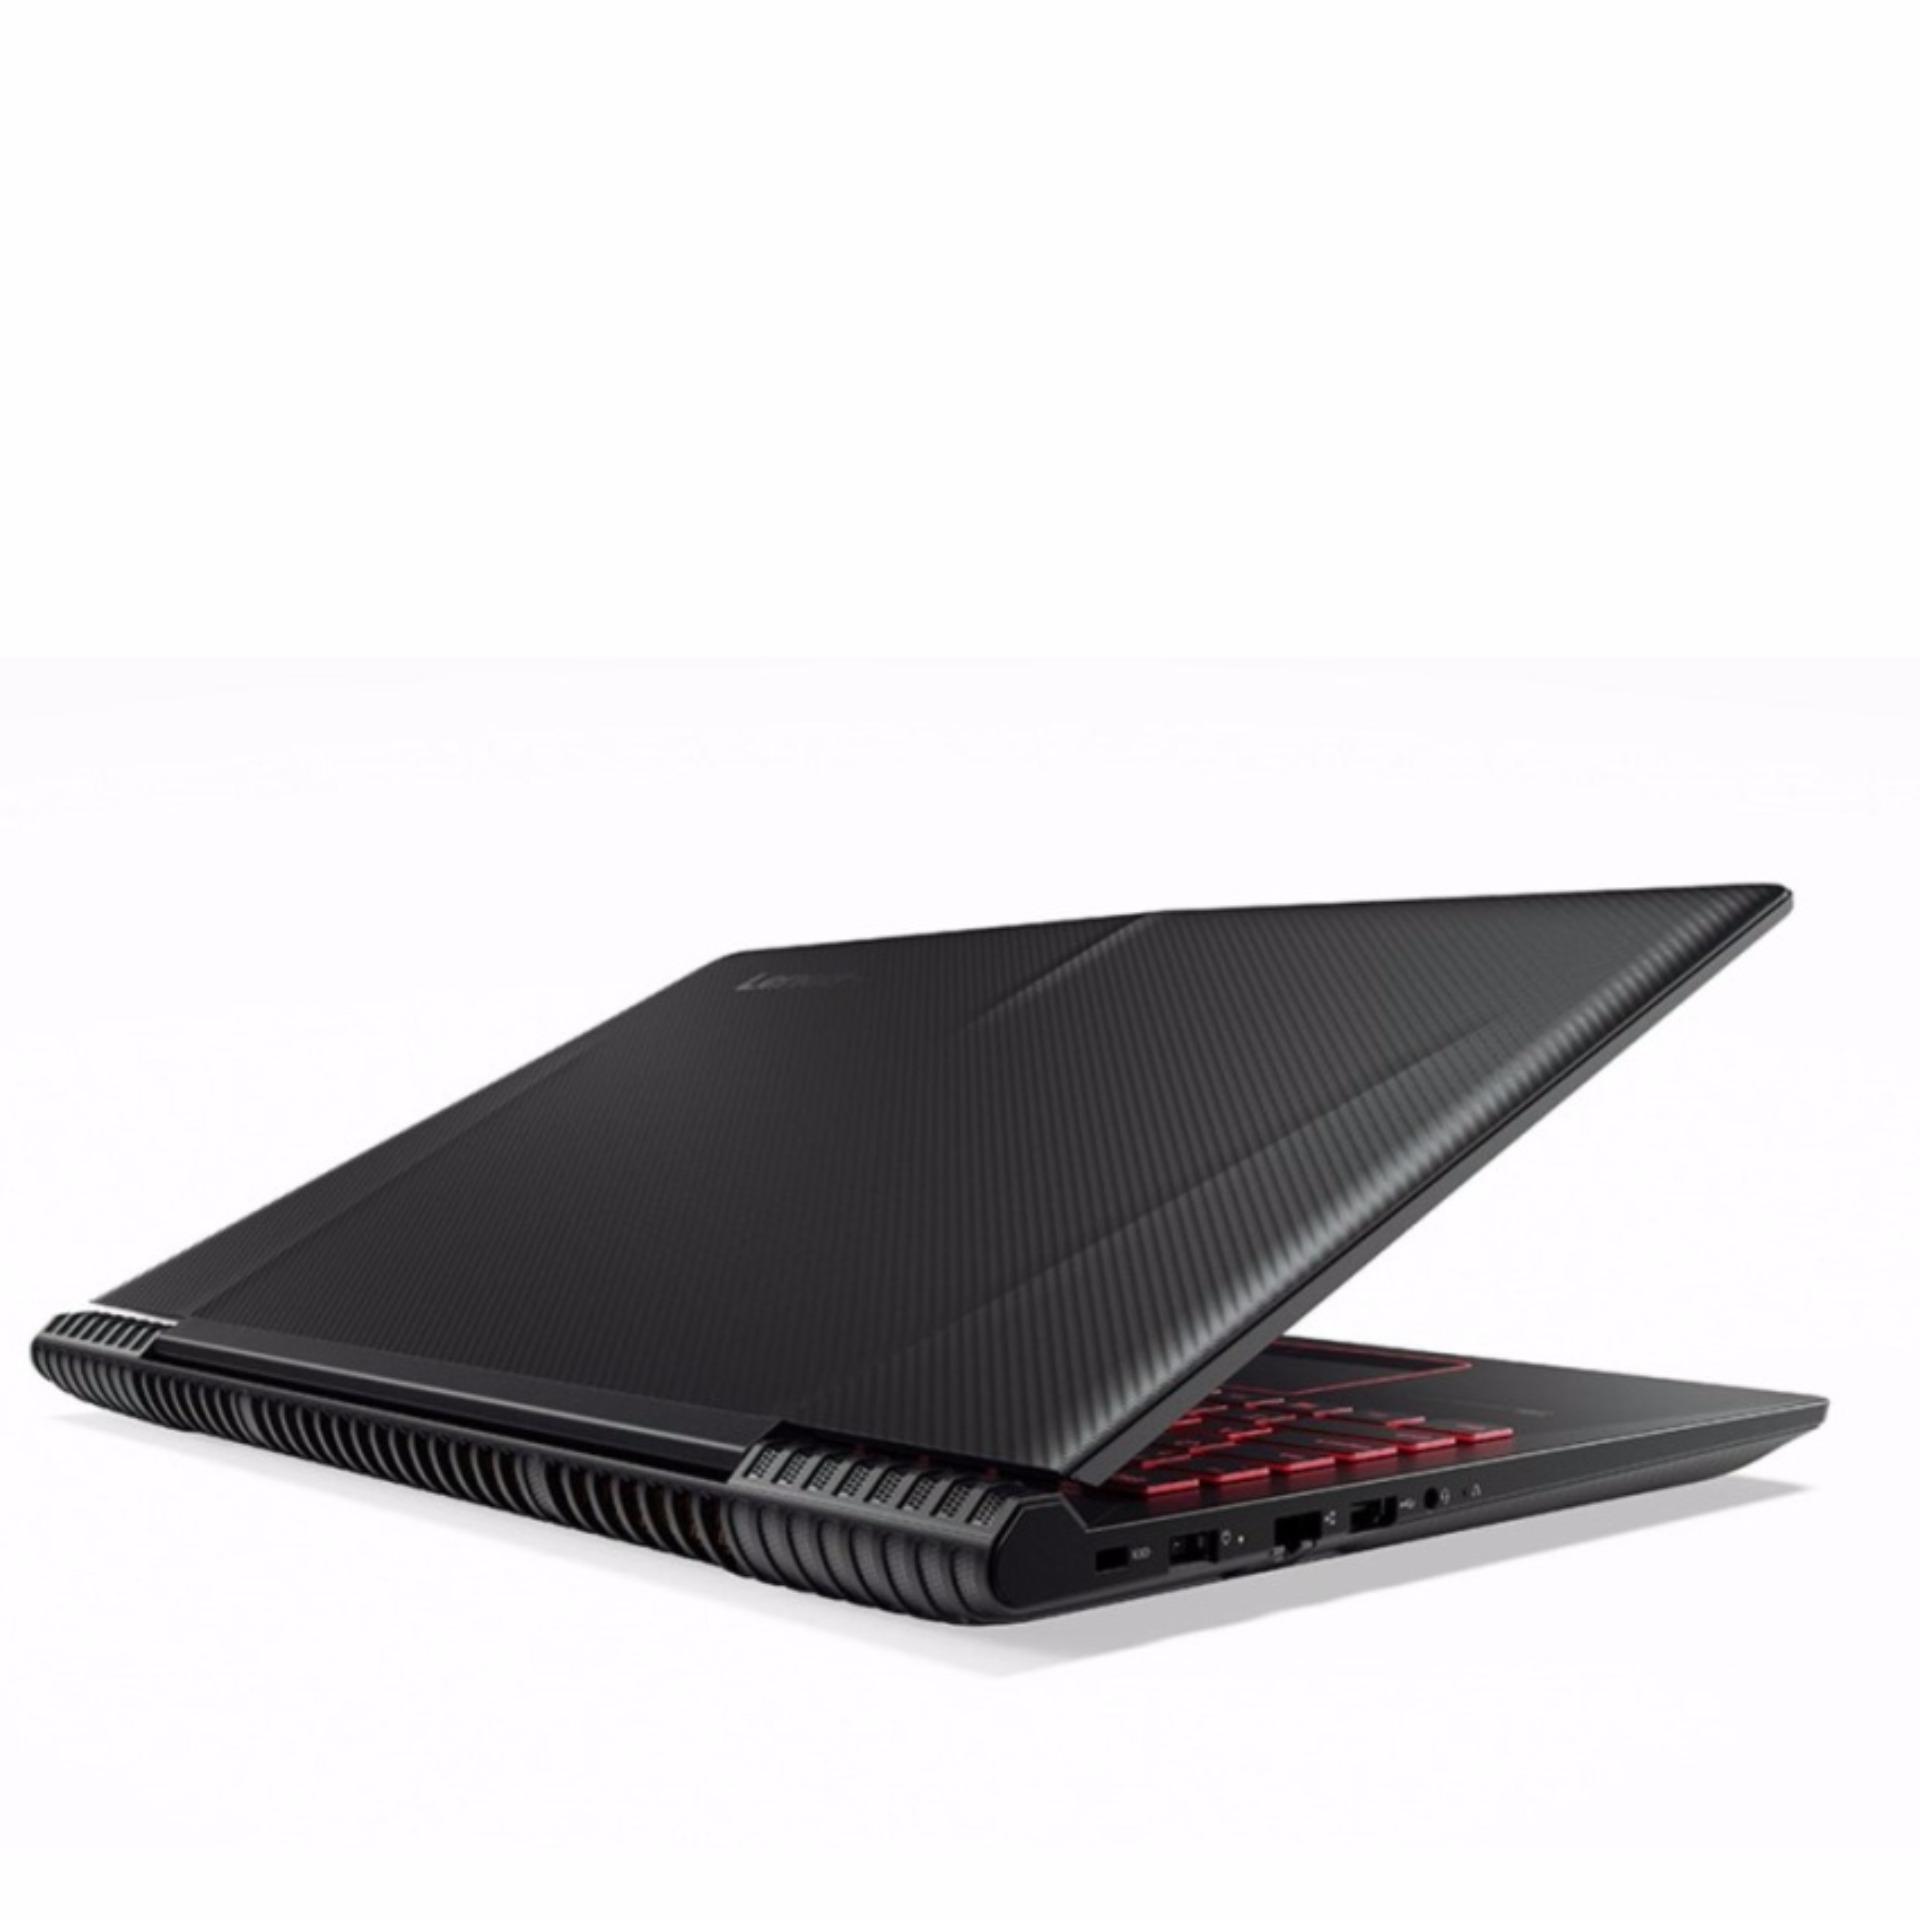 LENOVO legion Y520 (80wk00assb) Gaming Laptop- i7-7700HQ 128GB SSD 1TB HDD 8GB GTX1050 4GB DDR5, WIN10